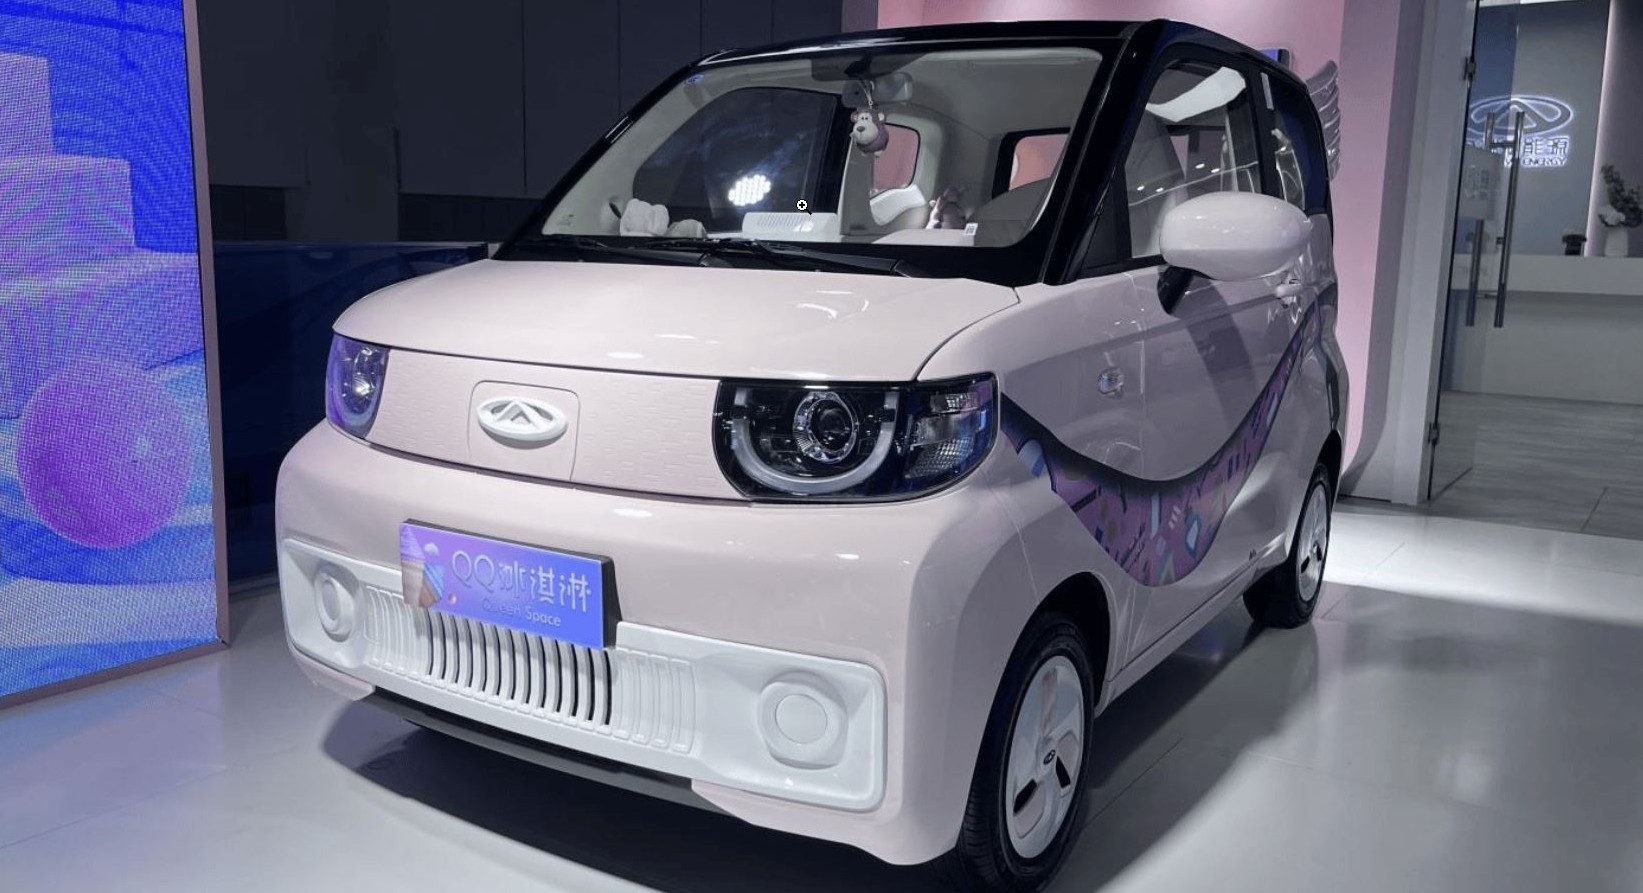 El nuevo city car Jaecoo 2023 está listo para desafiar realmente a Fiat Panda con la entrada de los autos Chery en Italia